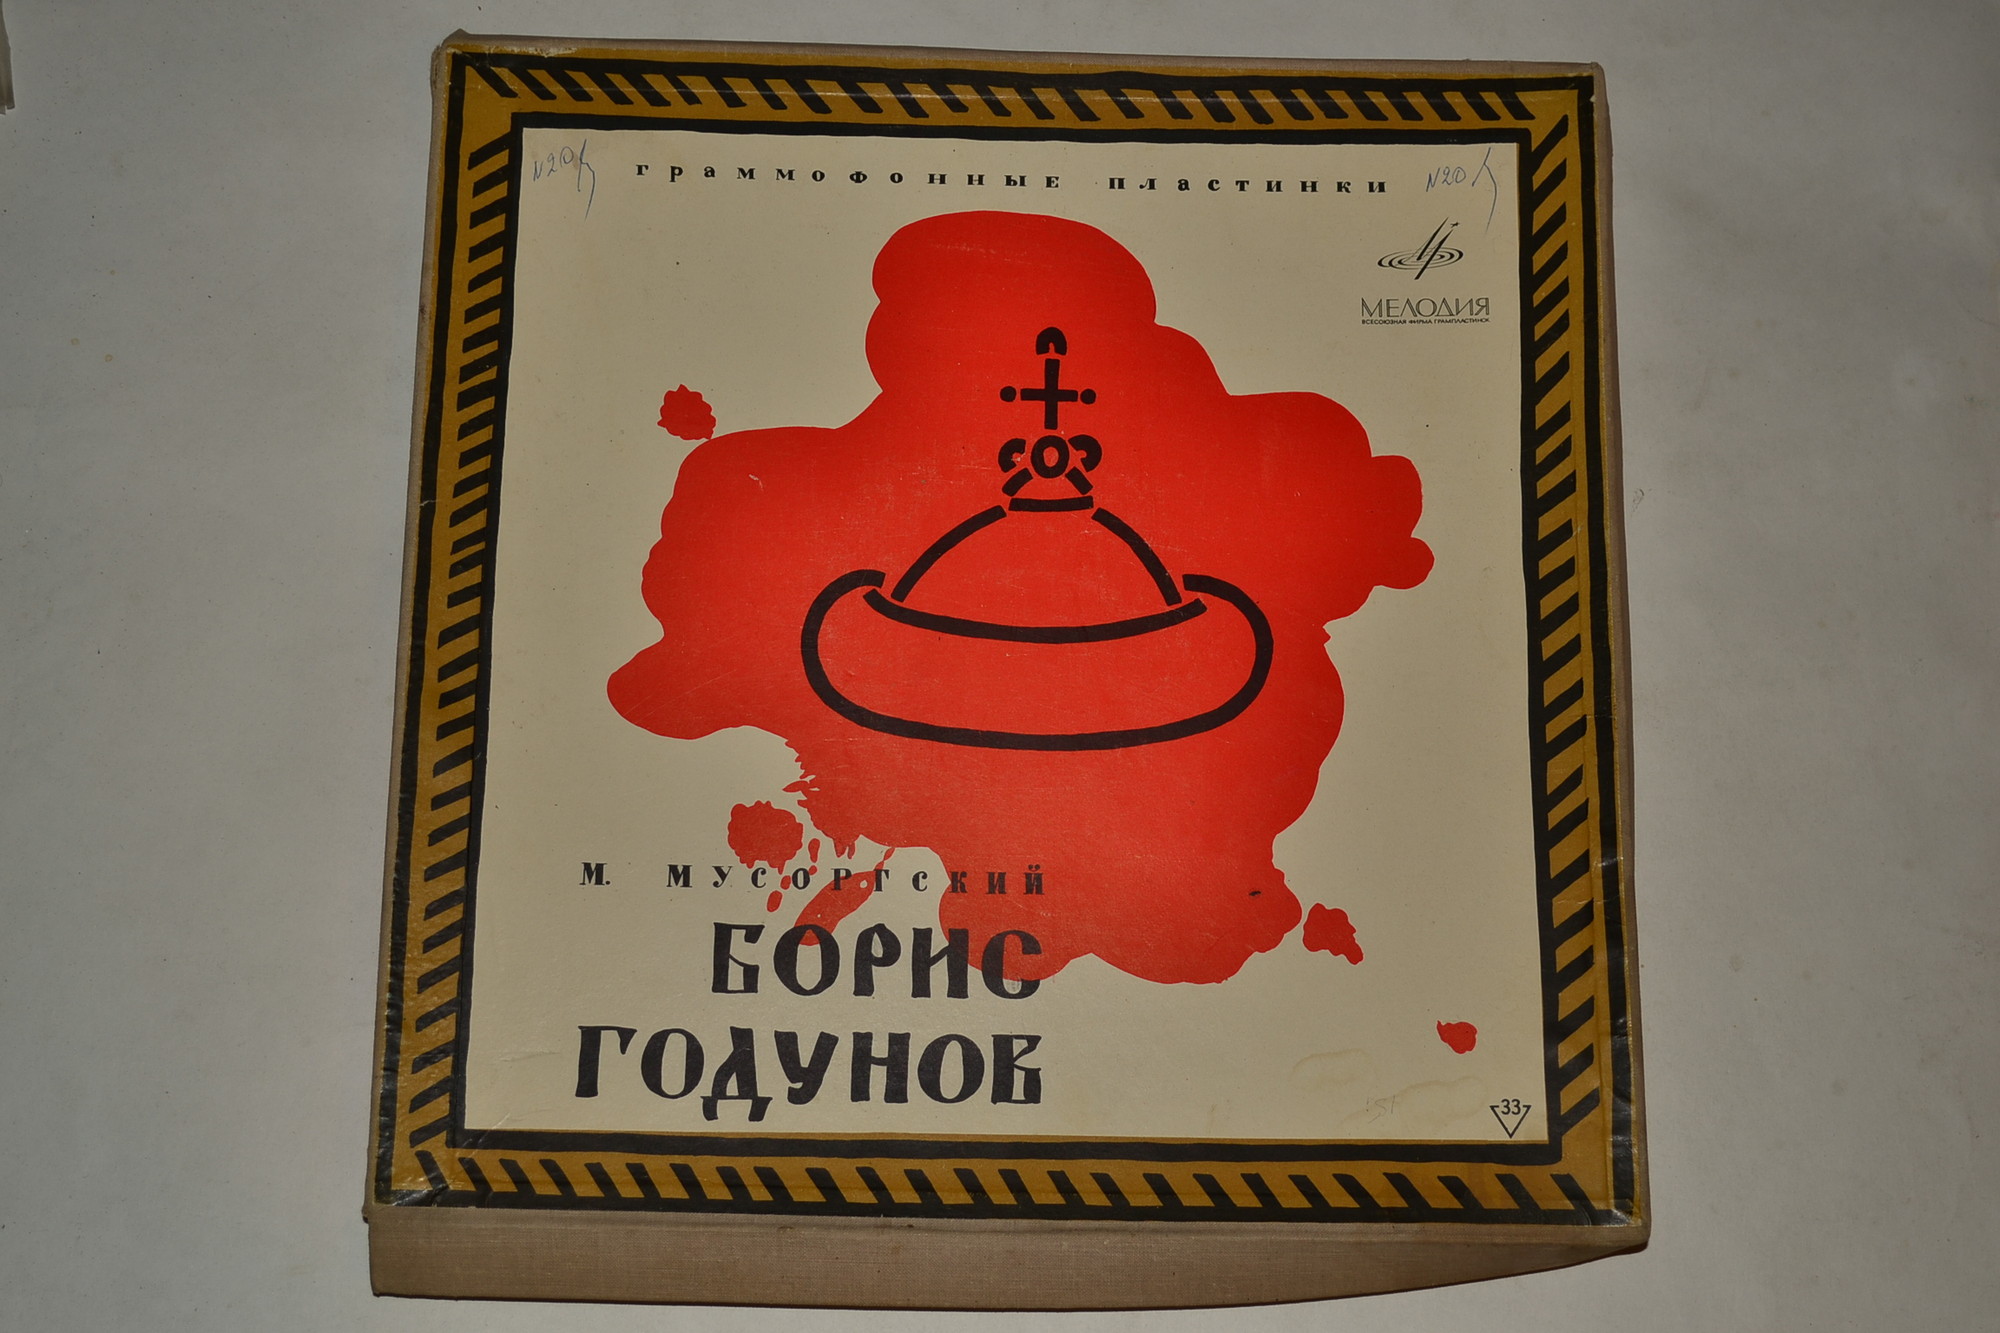 М. МУСОРГСКИЙ (1839–1882) «Борис Годунов», опера в 5 д. — А. Мелик-Пашаев